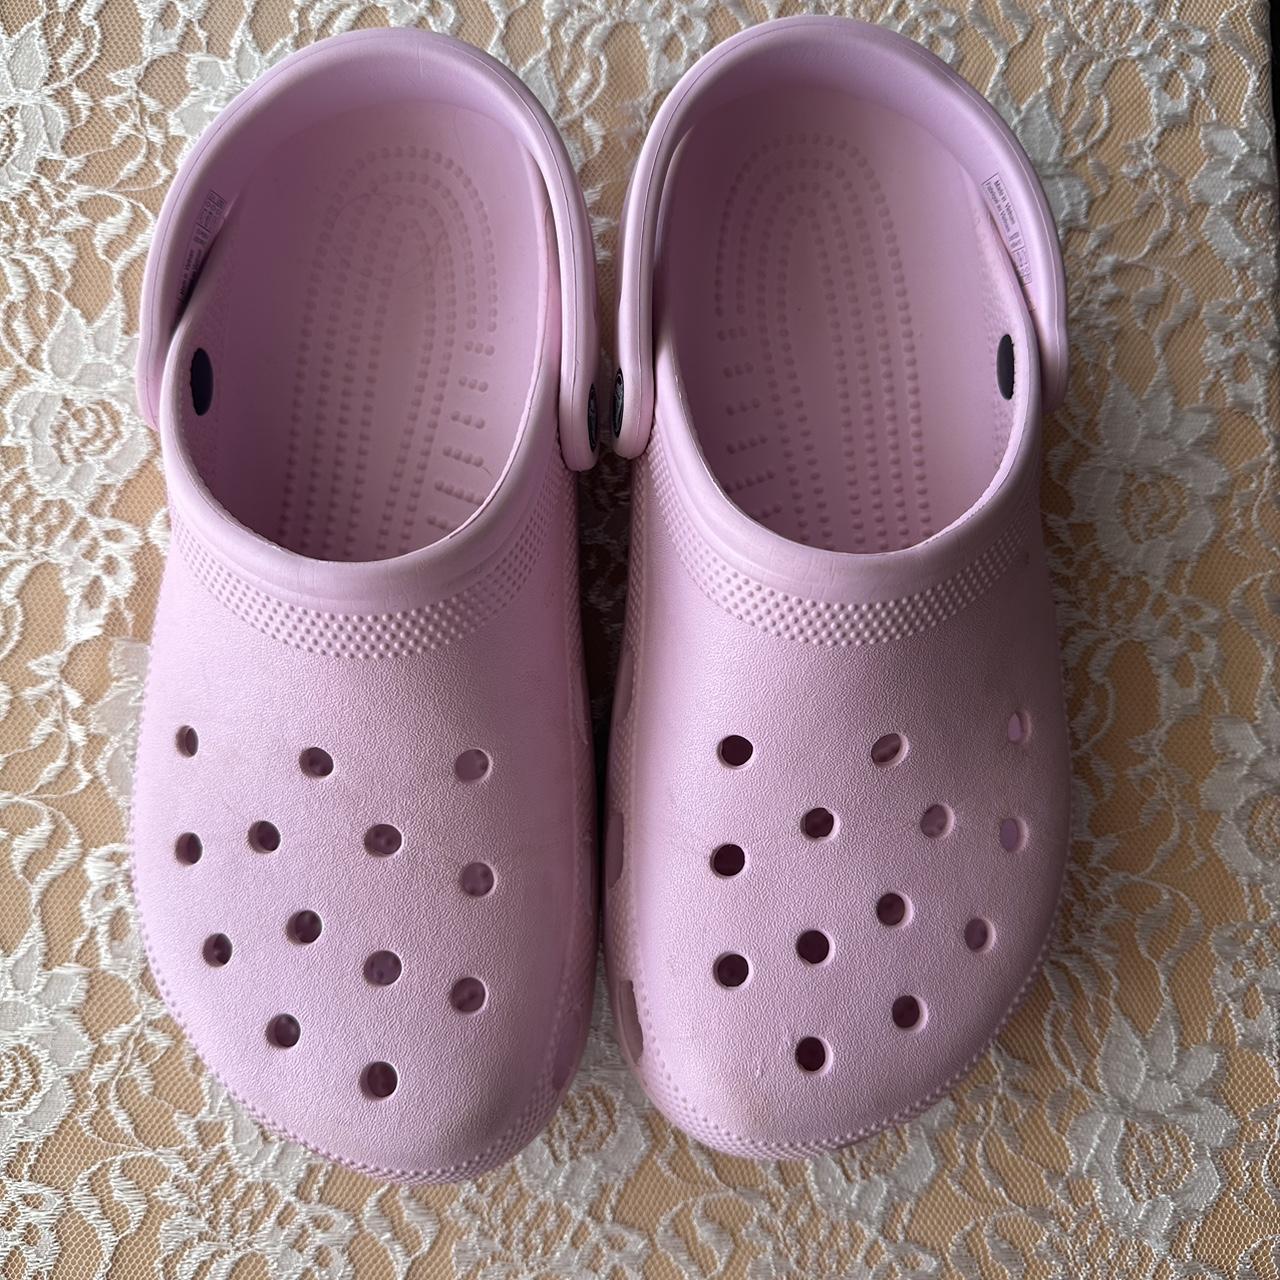 pink crocs size 10 women's - men's - Depop